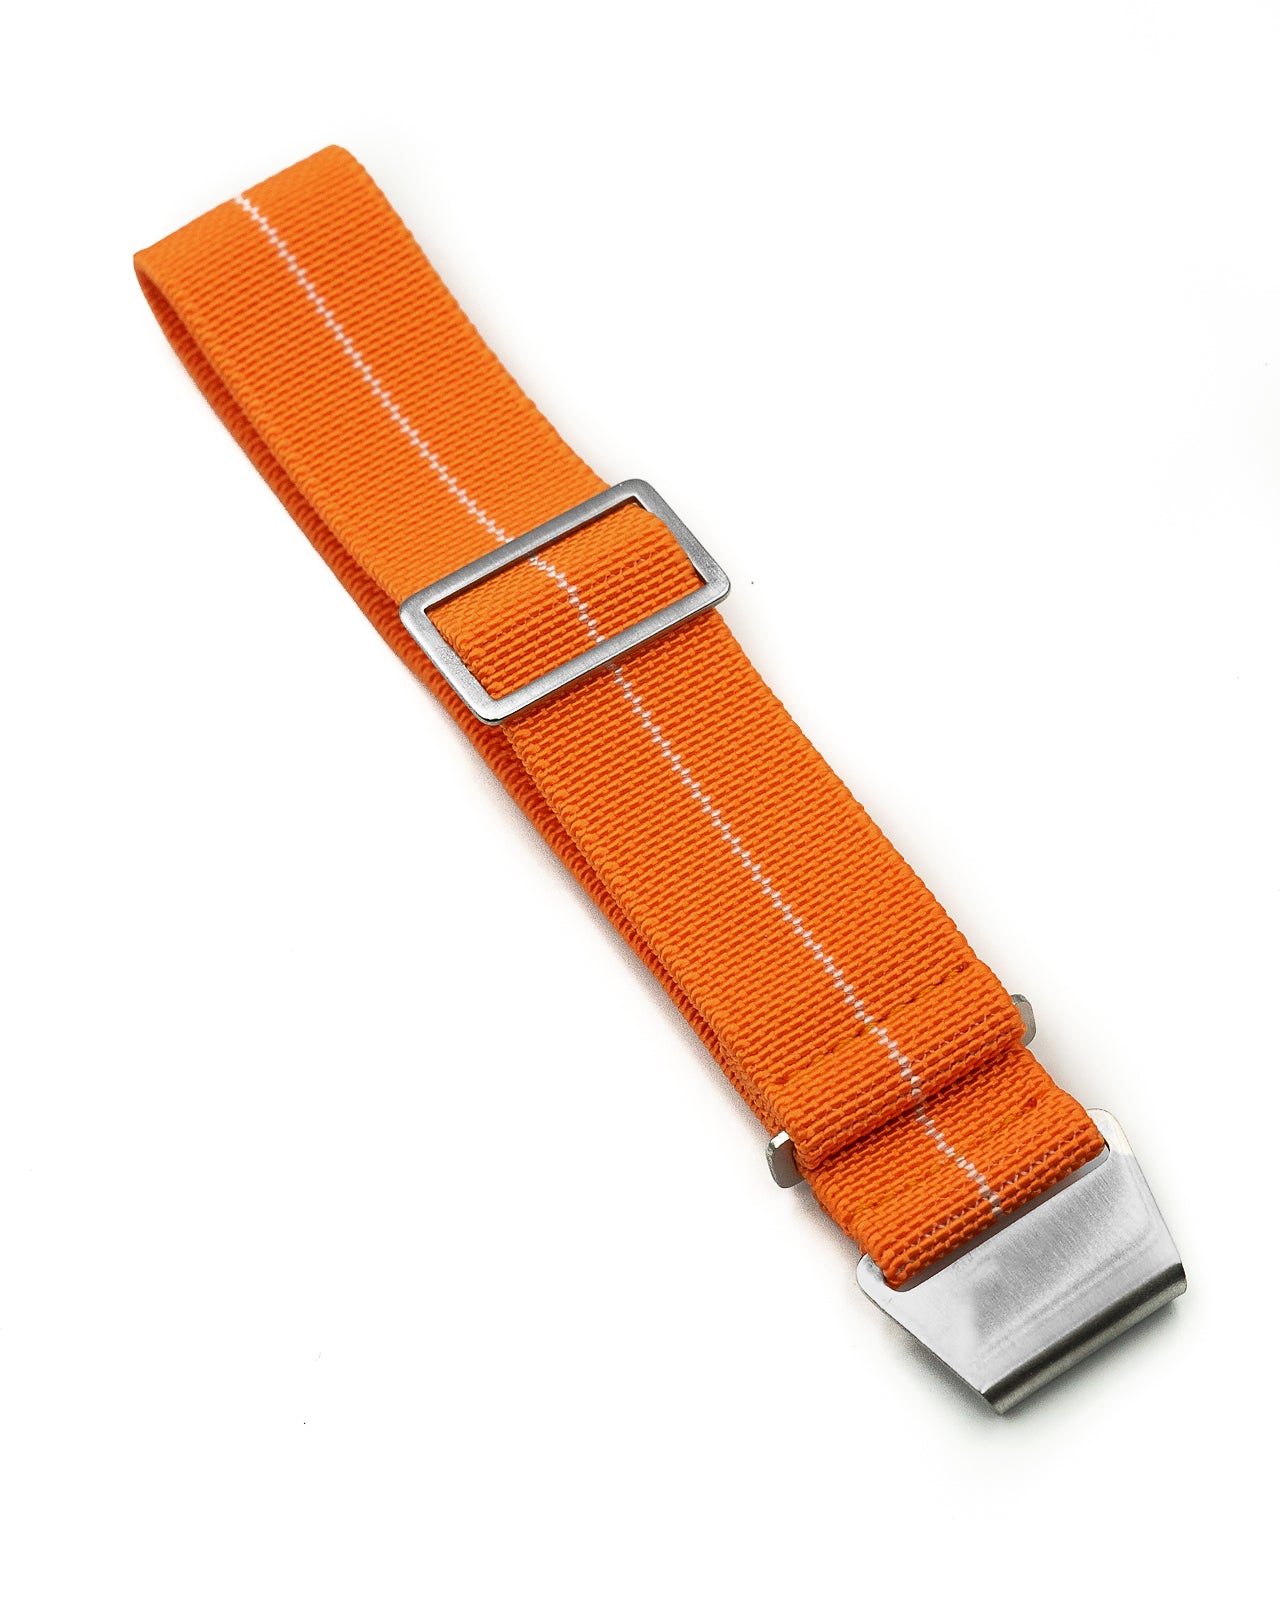 PARA Elastic - Orange with White Centerline